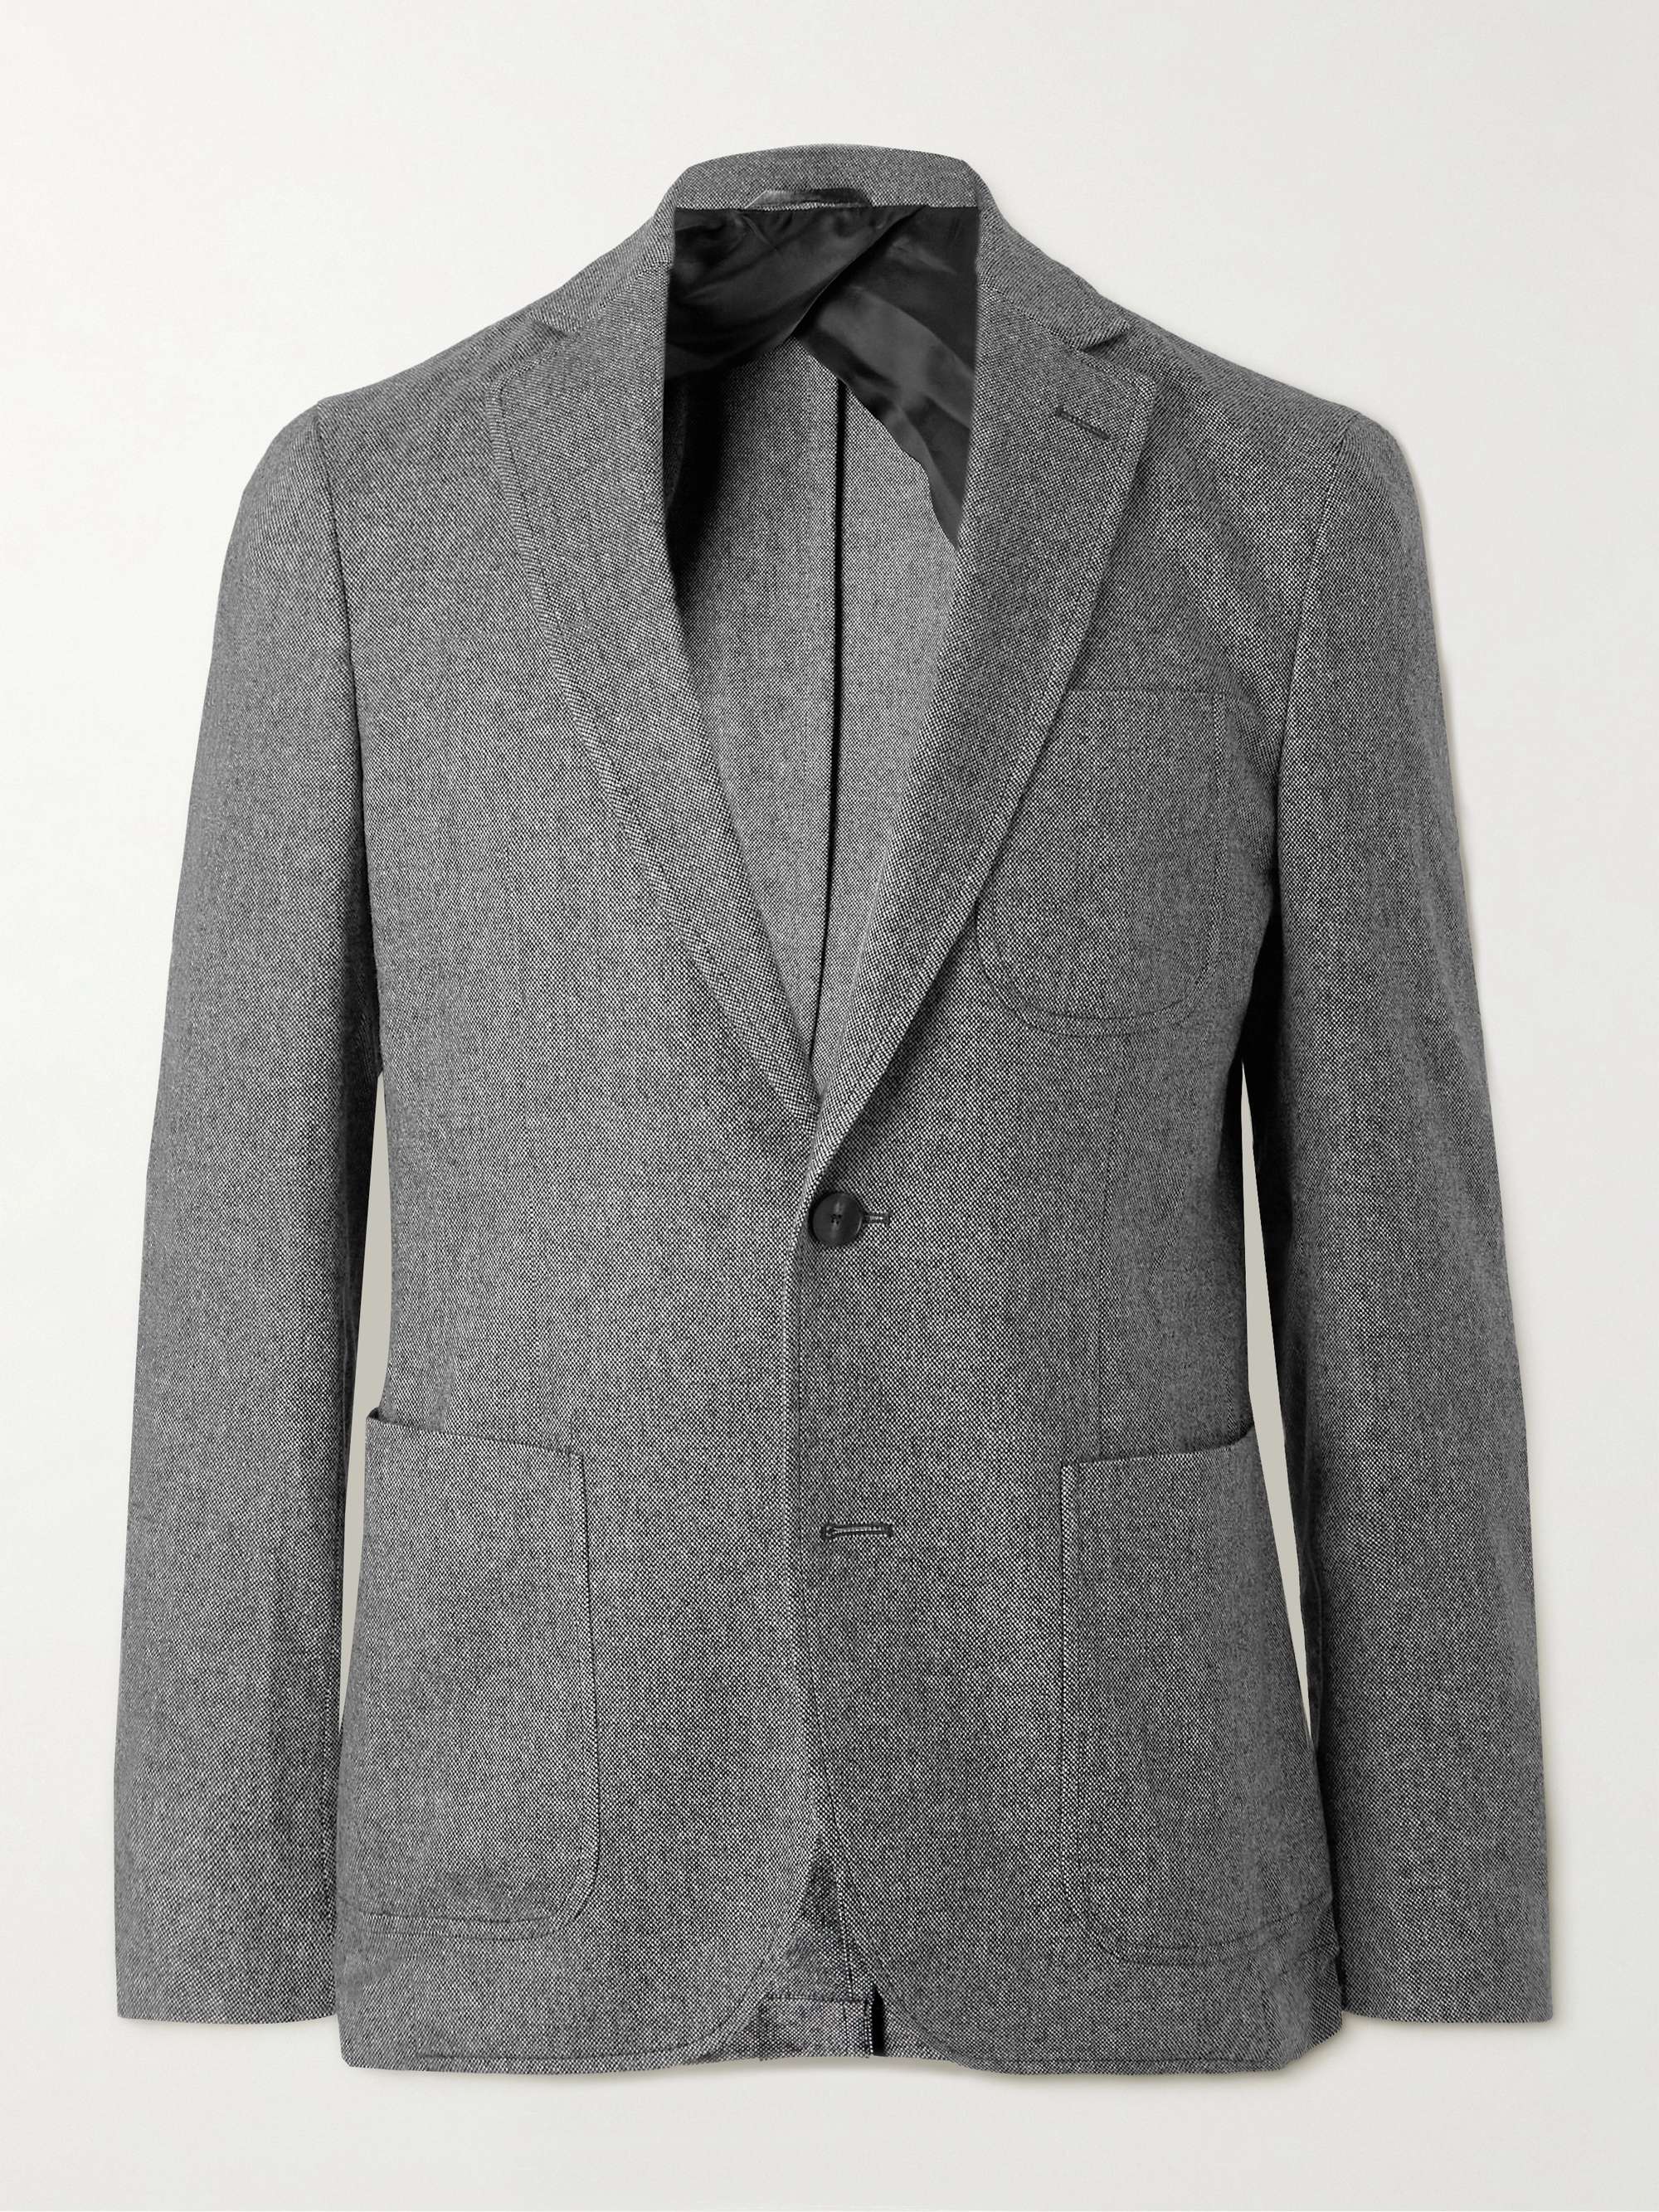 MR P. Slim-Fit Donegal Tweed Blazer for Men | MR PORTER